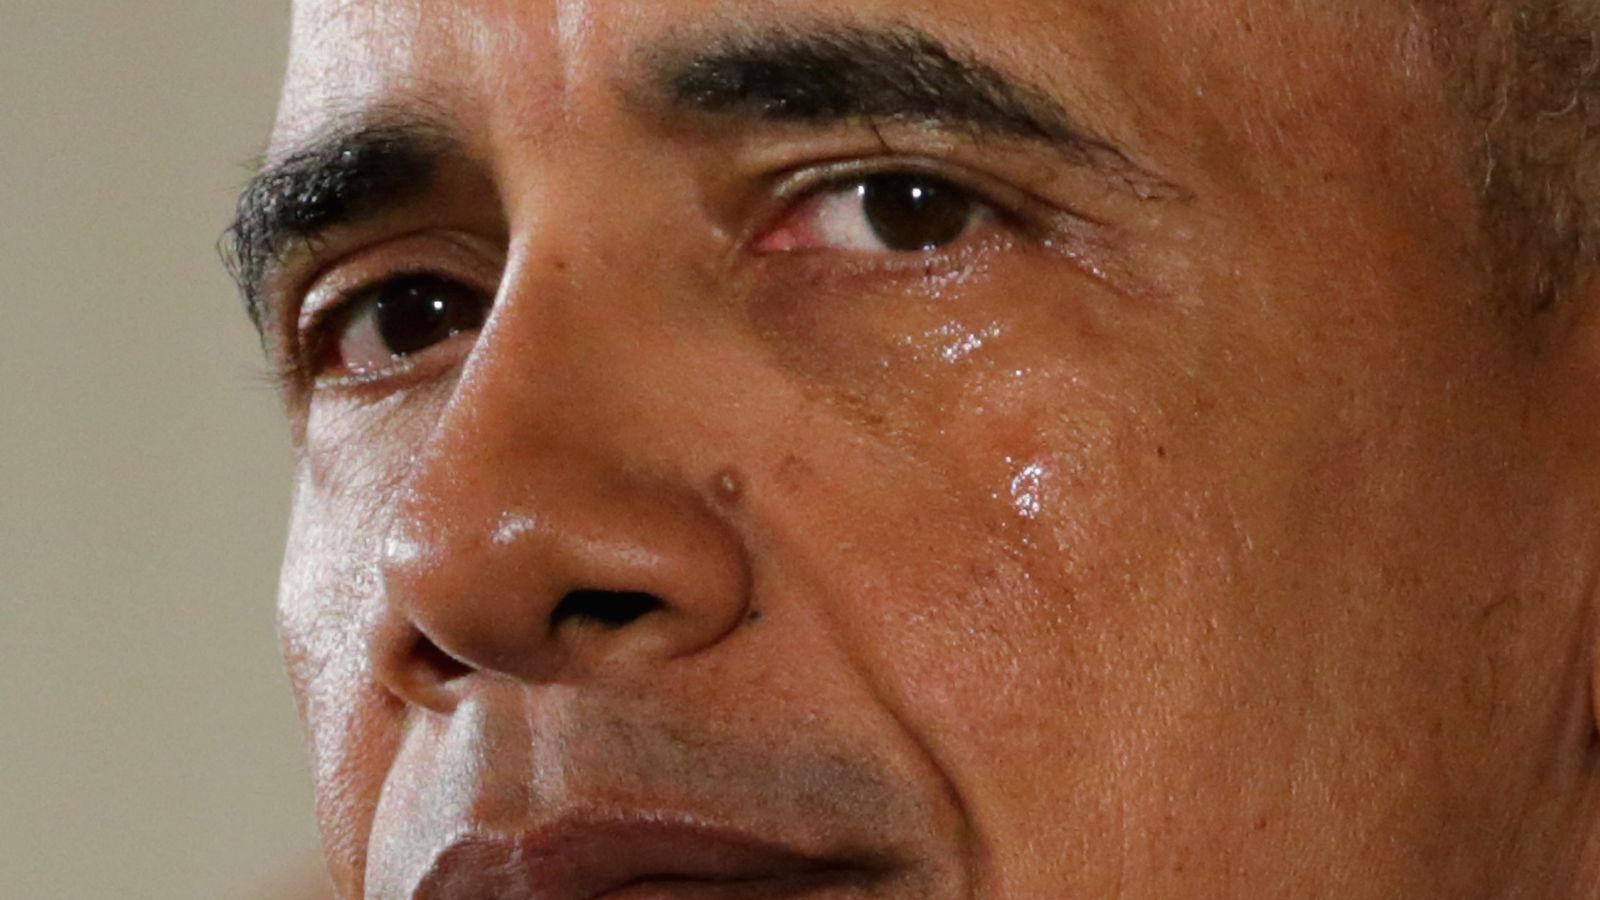 We Made It - Crying Obama